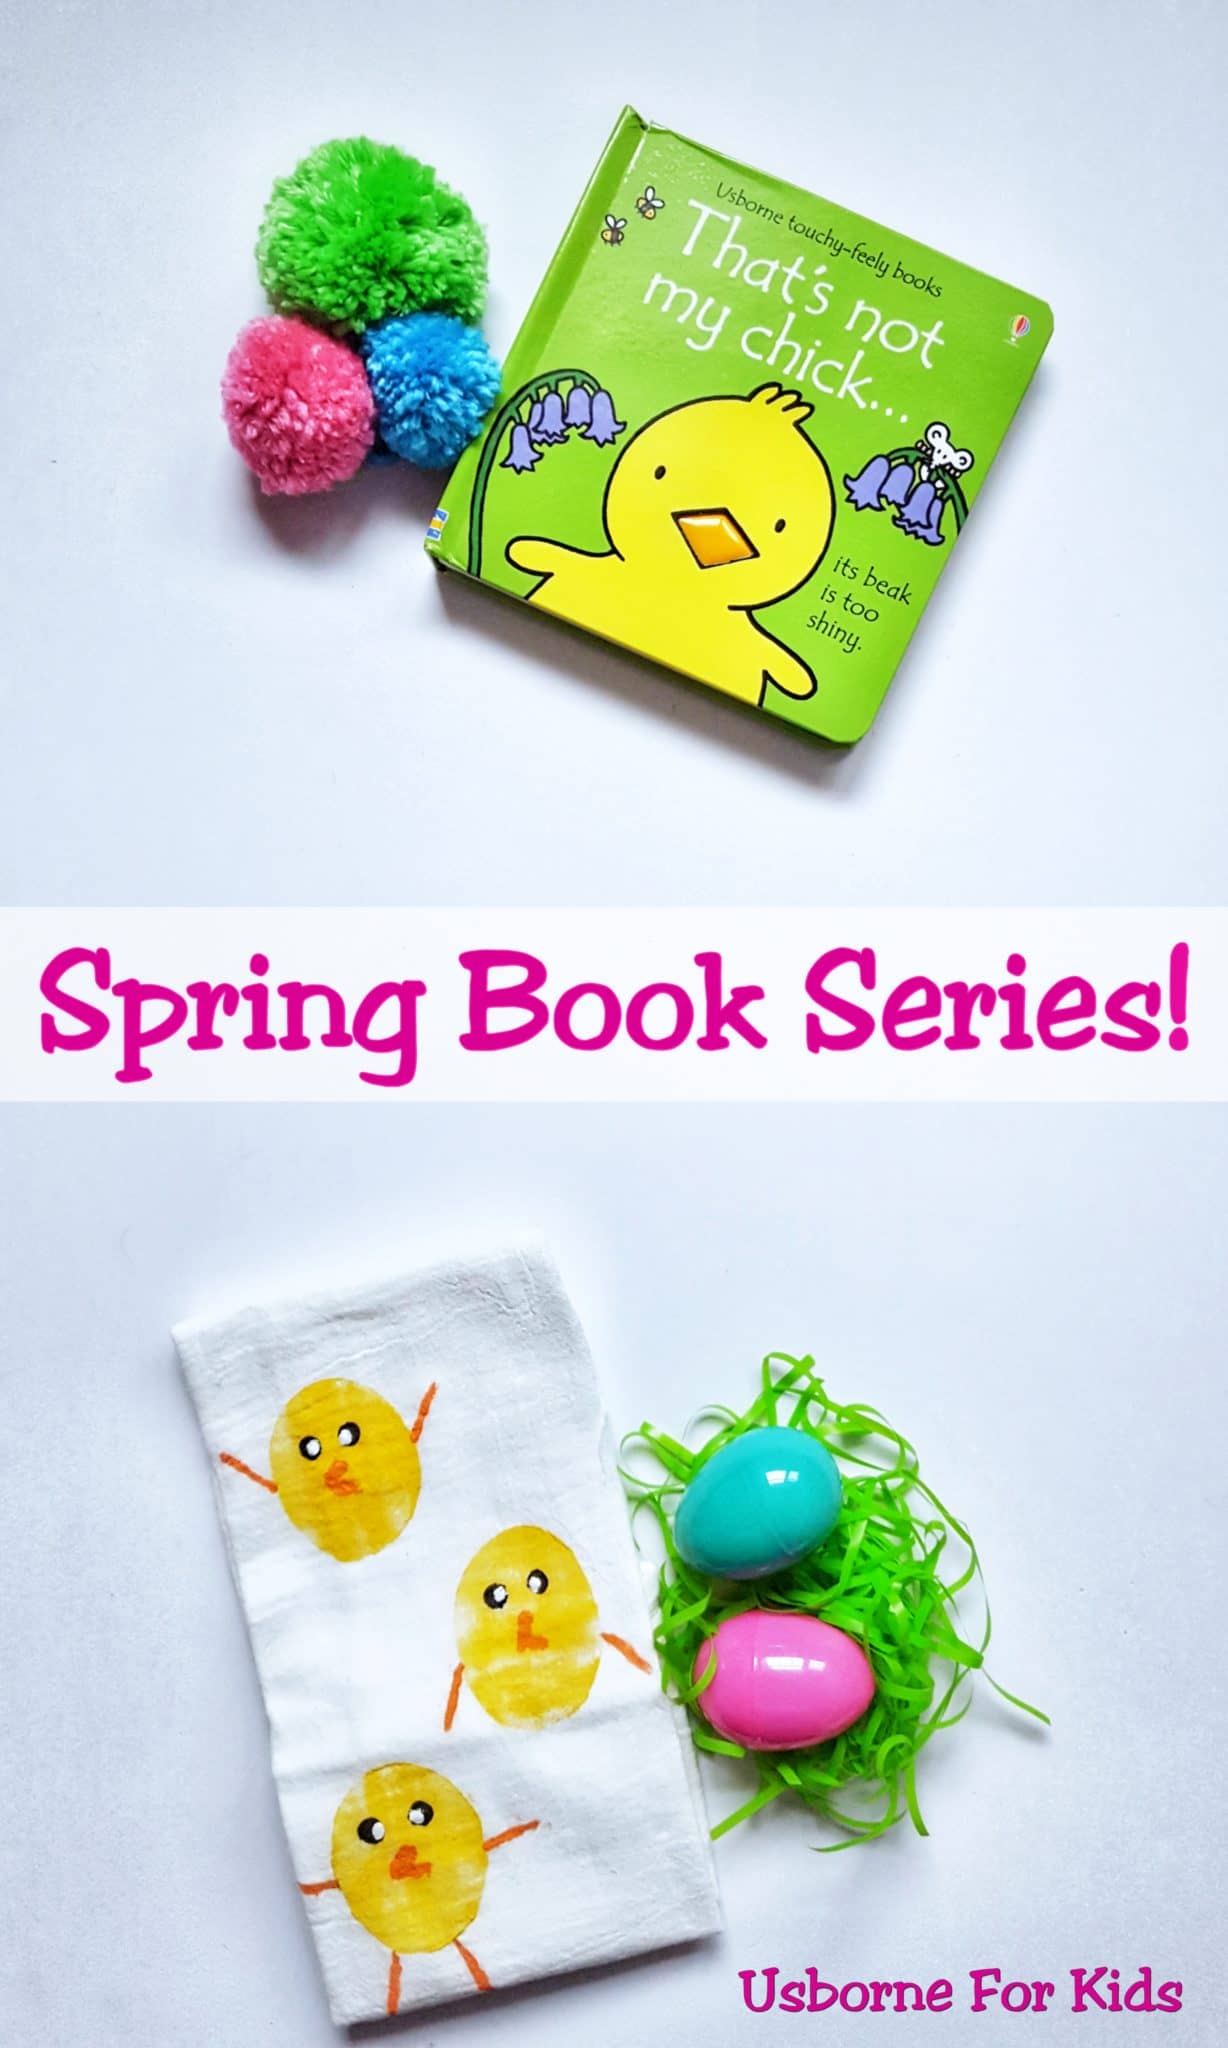 Spring Book Series! Week 3